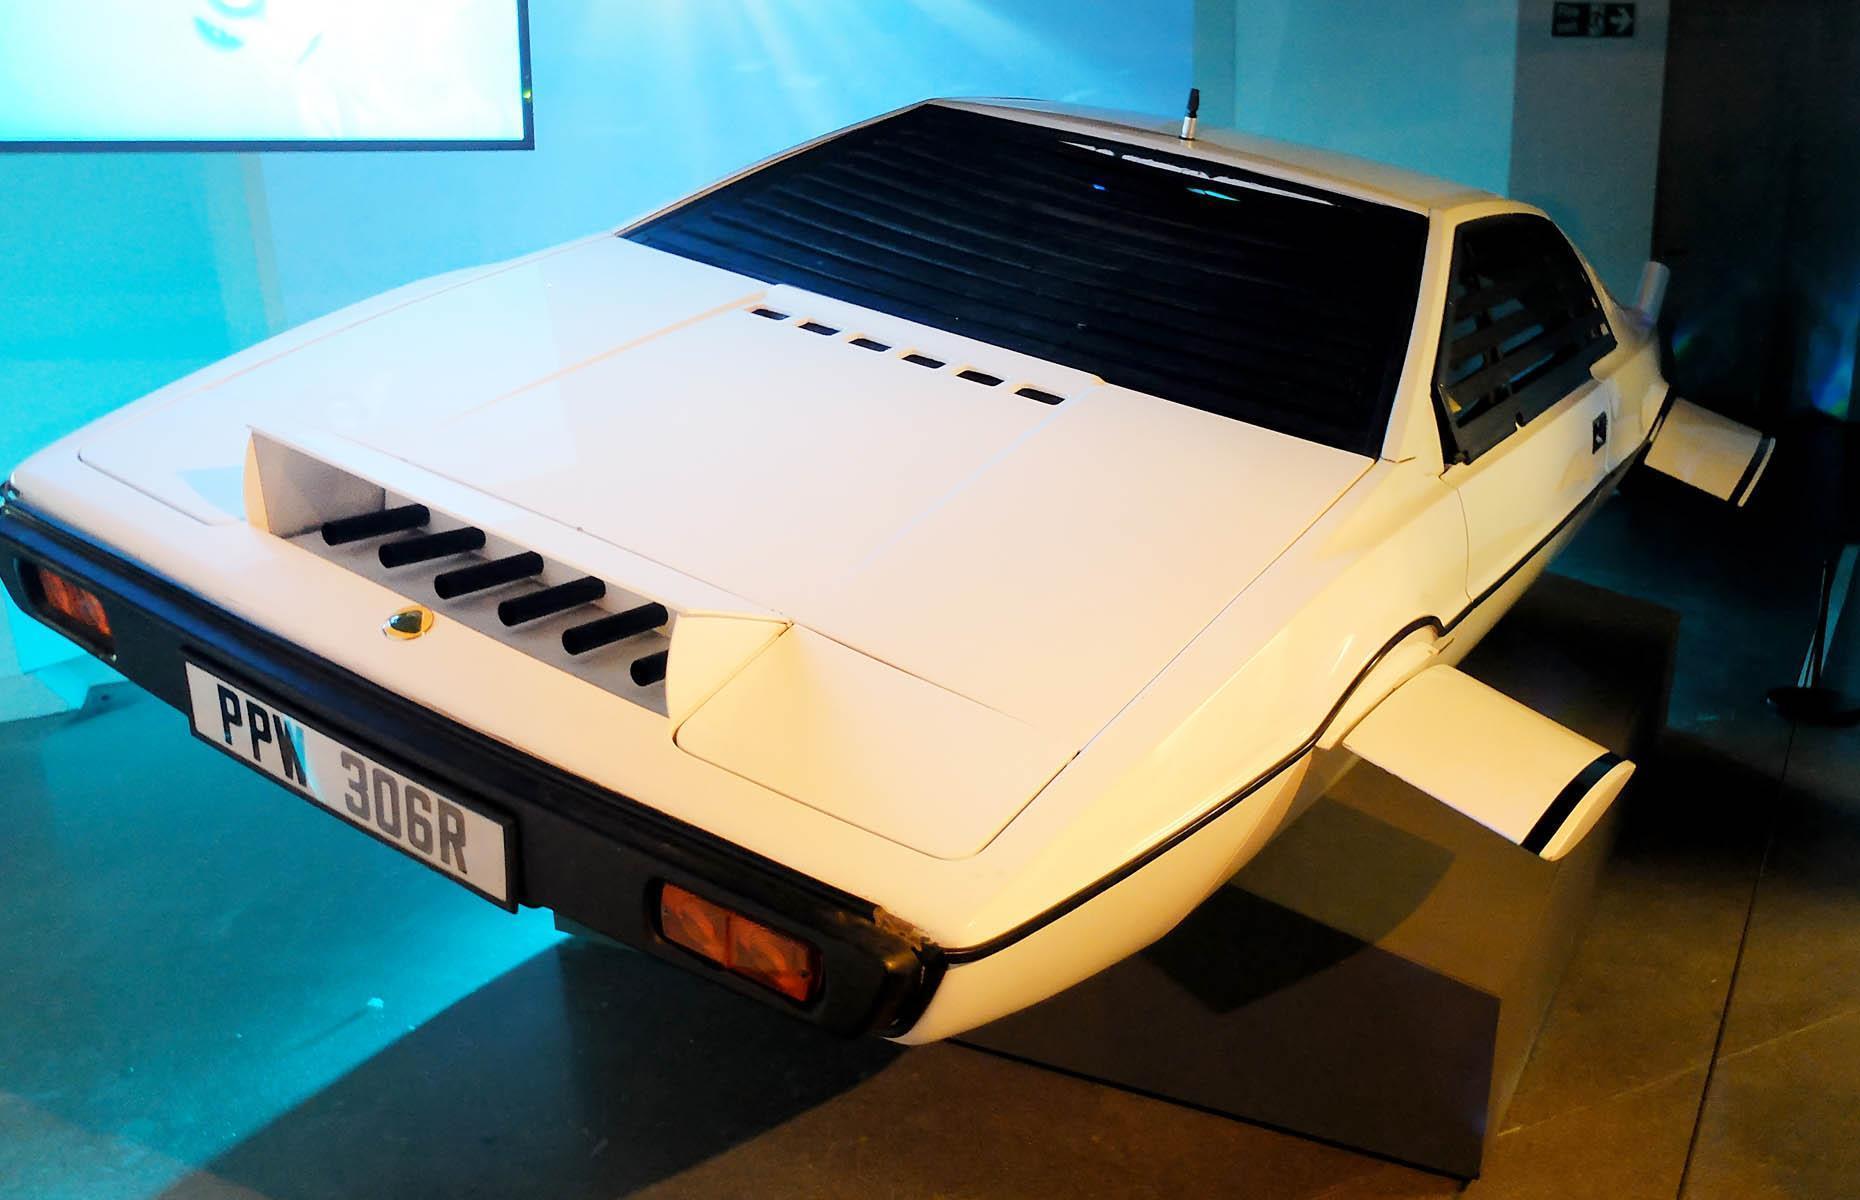 Tesla-Chef Elon Musk konnte es einfach nicht lassen und gab 2013 mehr als 616.000 britische Pfund (716.000 Euro) für dieses James-Bond-Auto aus. Der Lotus Esprit S1 von 1976 ist in einer einzigartigen U-Boot-Ausführung in „Der Spion, der mich liebte“ zu sehen. Die sogenannte „Wet Nellie“ wurde speziell für den 007-Film entworfen und kostete damals rund 100.000 US-Dollar.